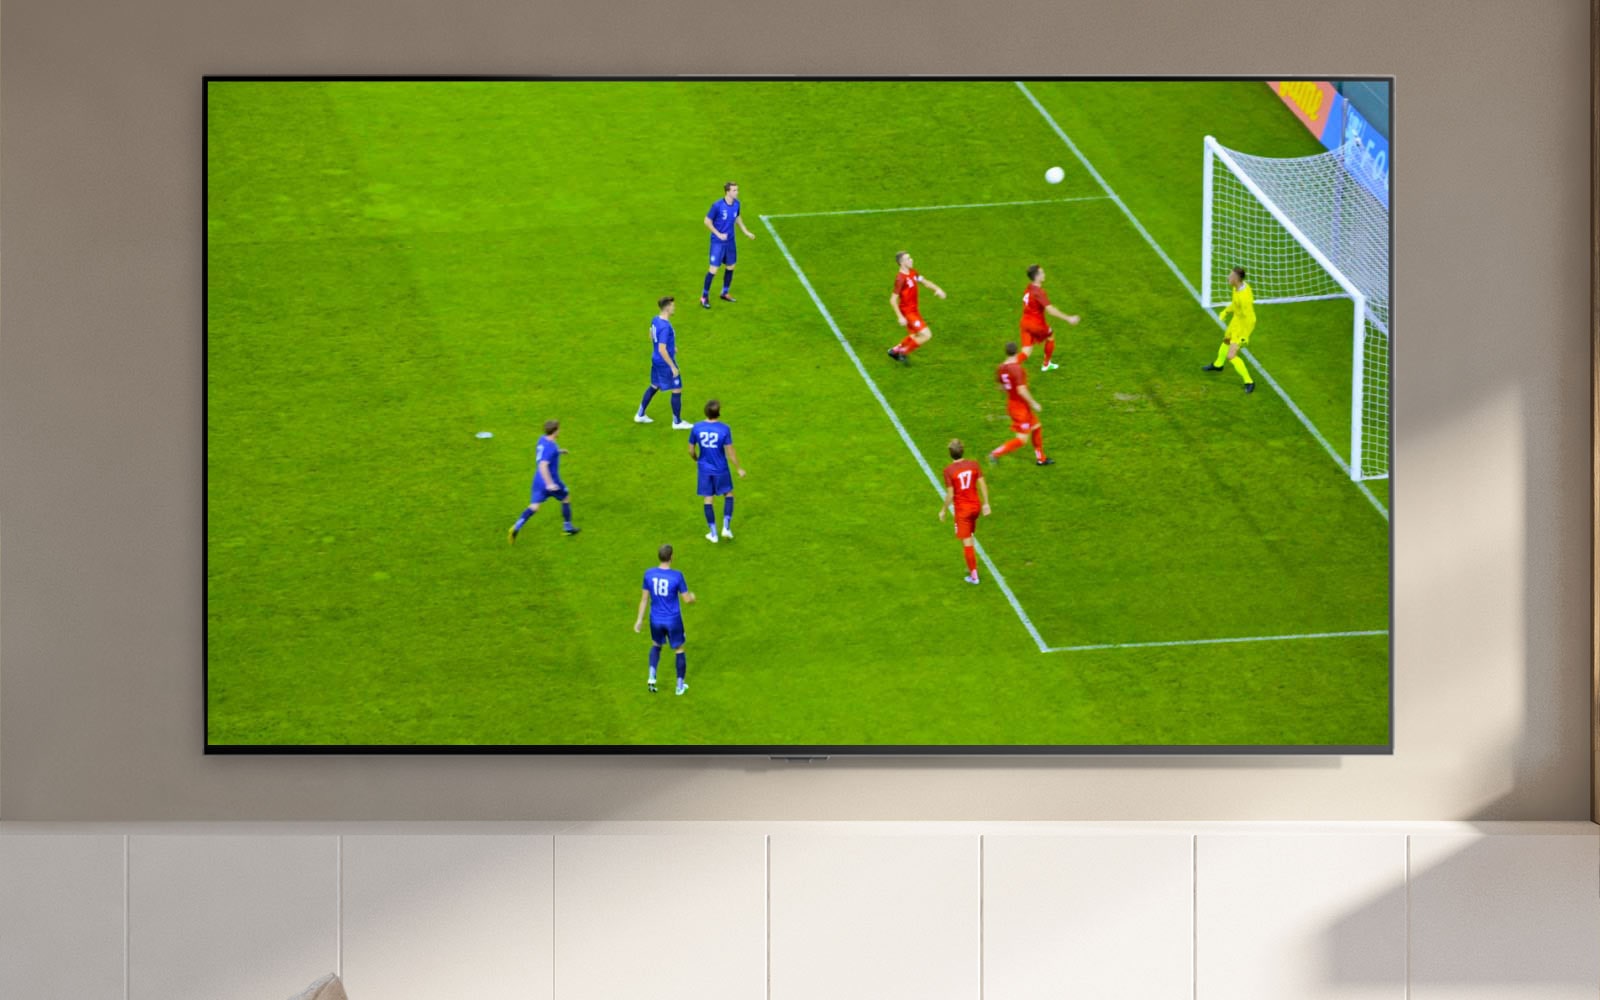 TV zaslon, na katerem je prikazan nogometni stadion in igralec, ki je dosegel gol (predvajanje videa).